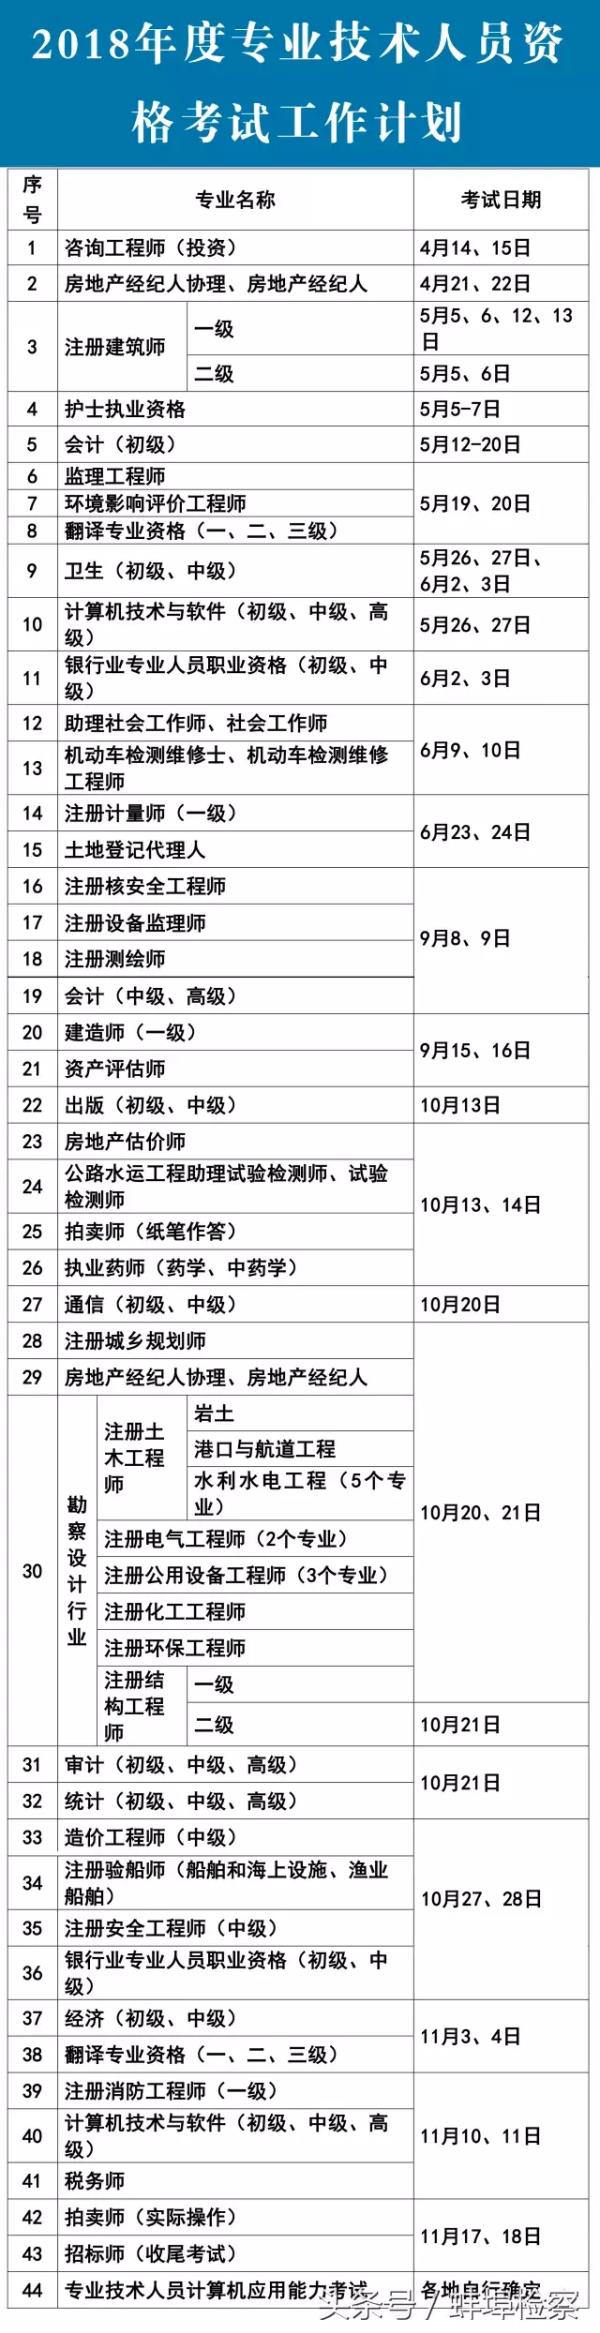 蚌埠高级会计师考证_蚌埠市会计考试管理机构